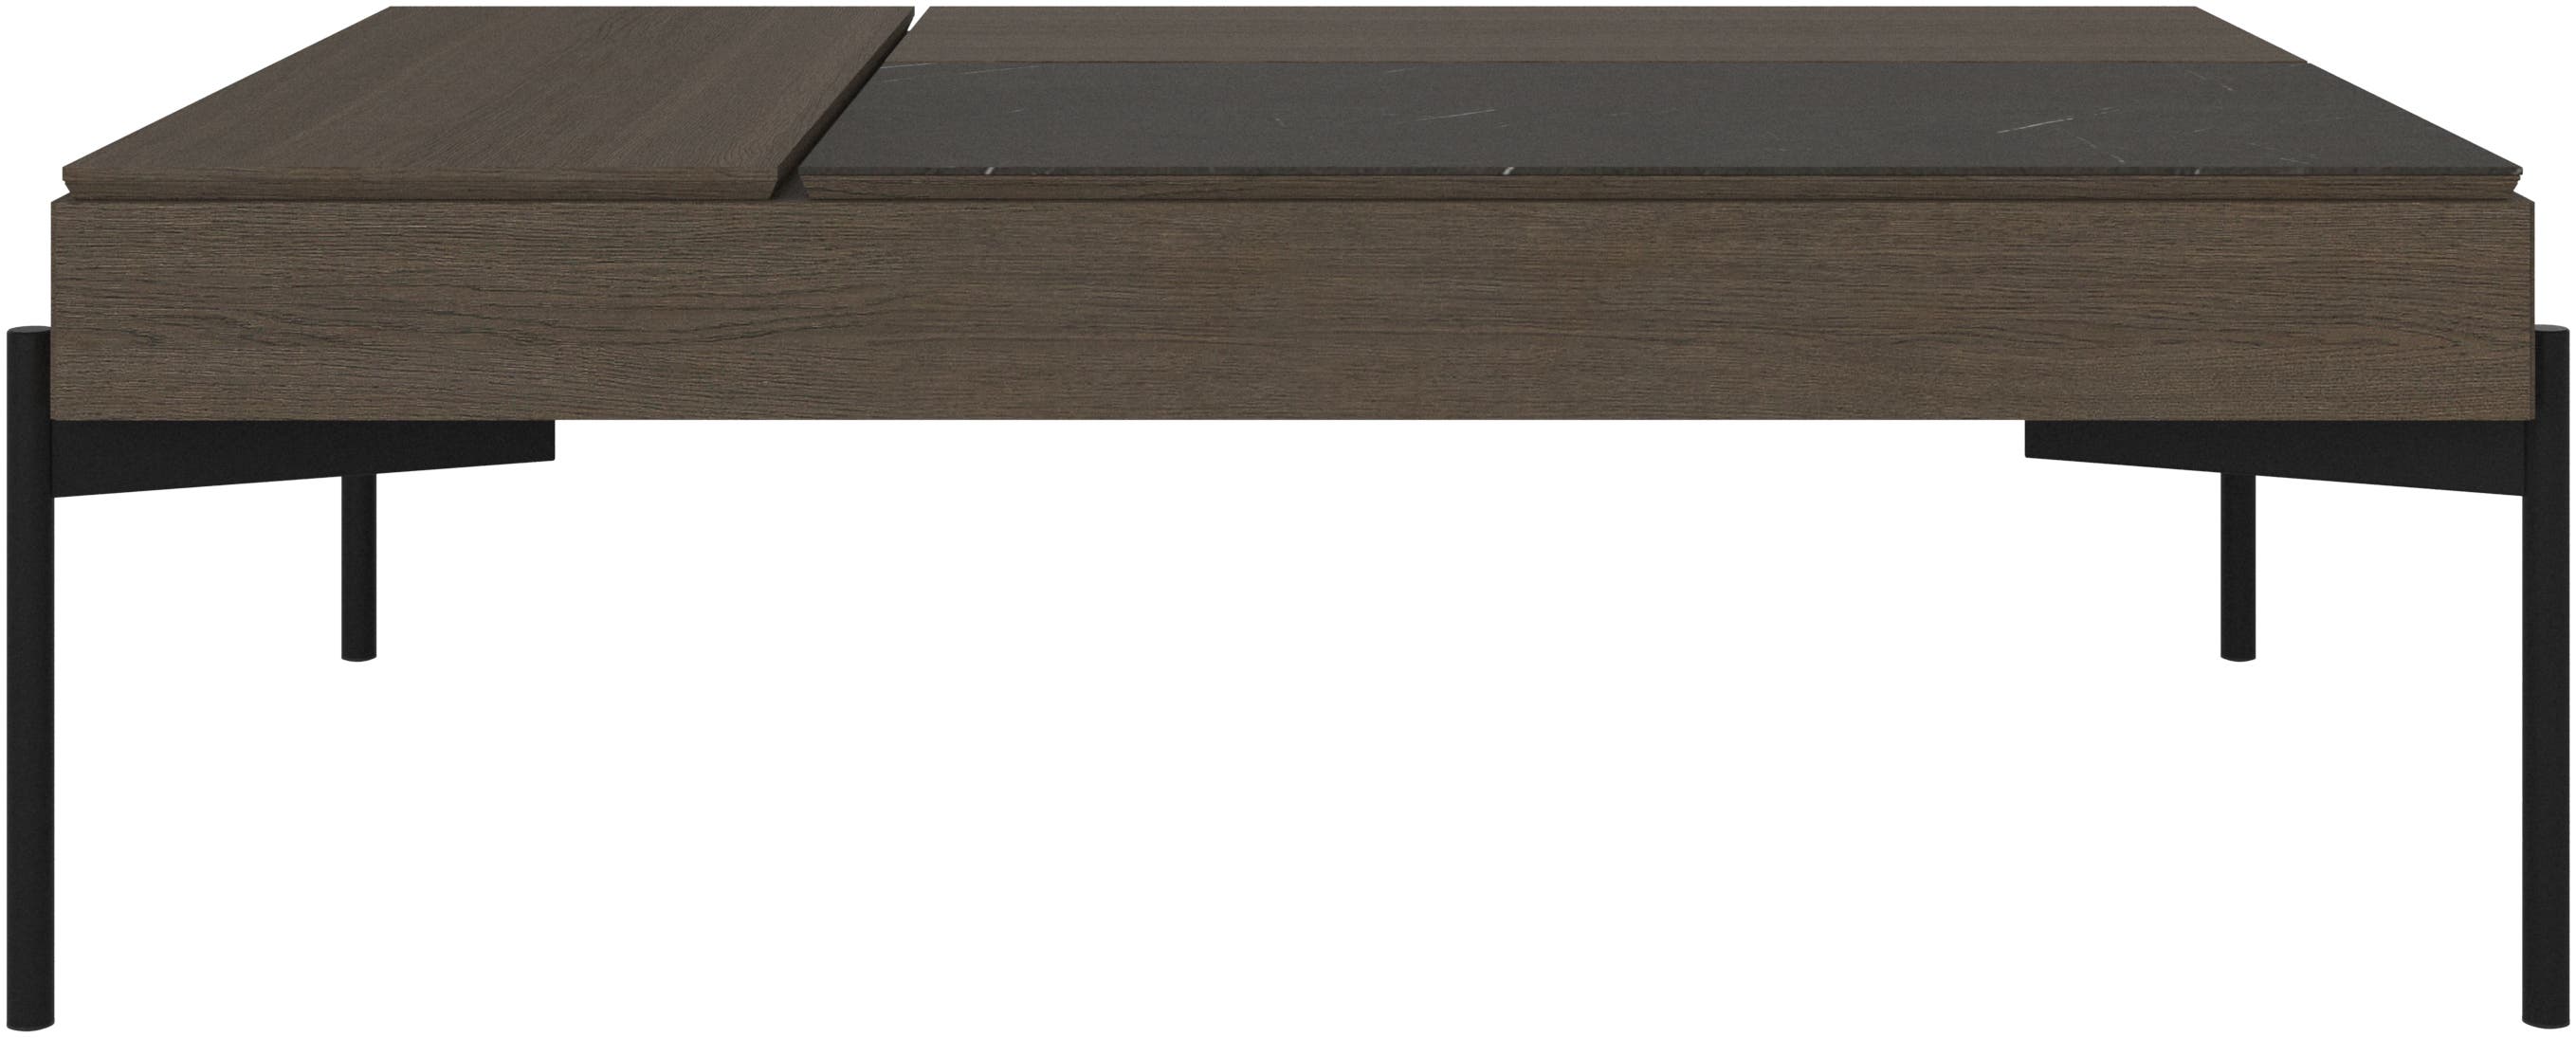 Table basse multifonction Chiva avec espace de rangement